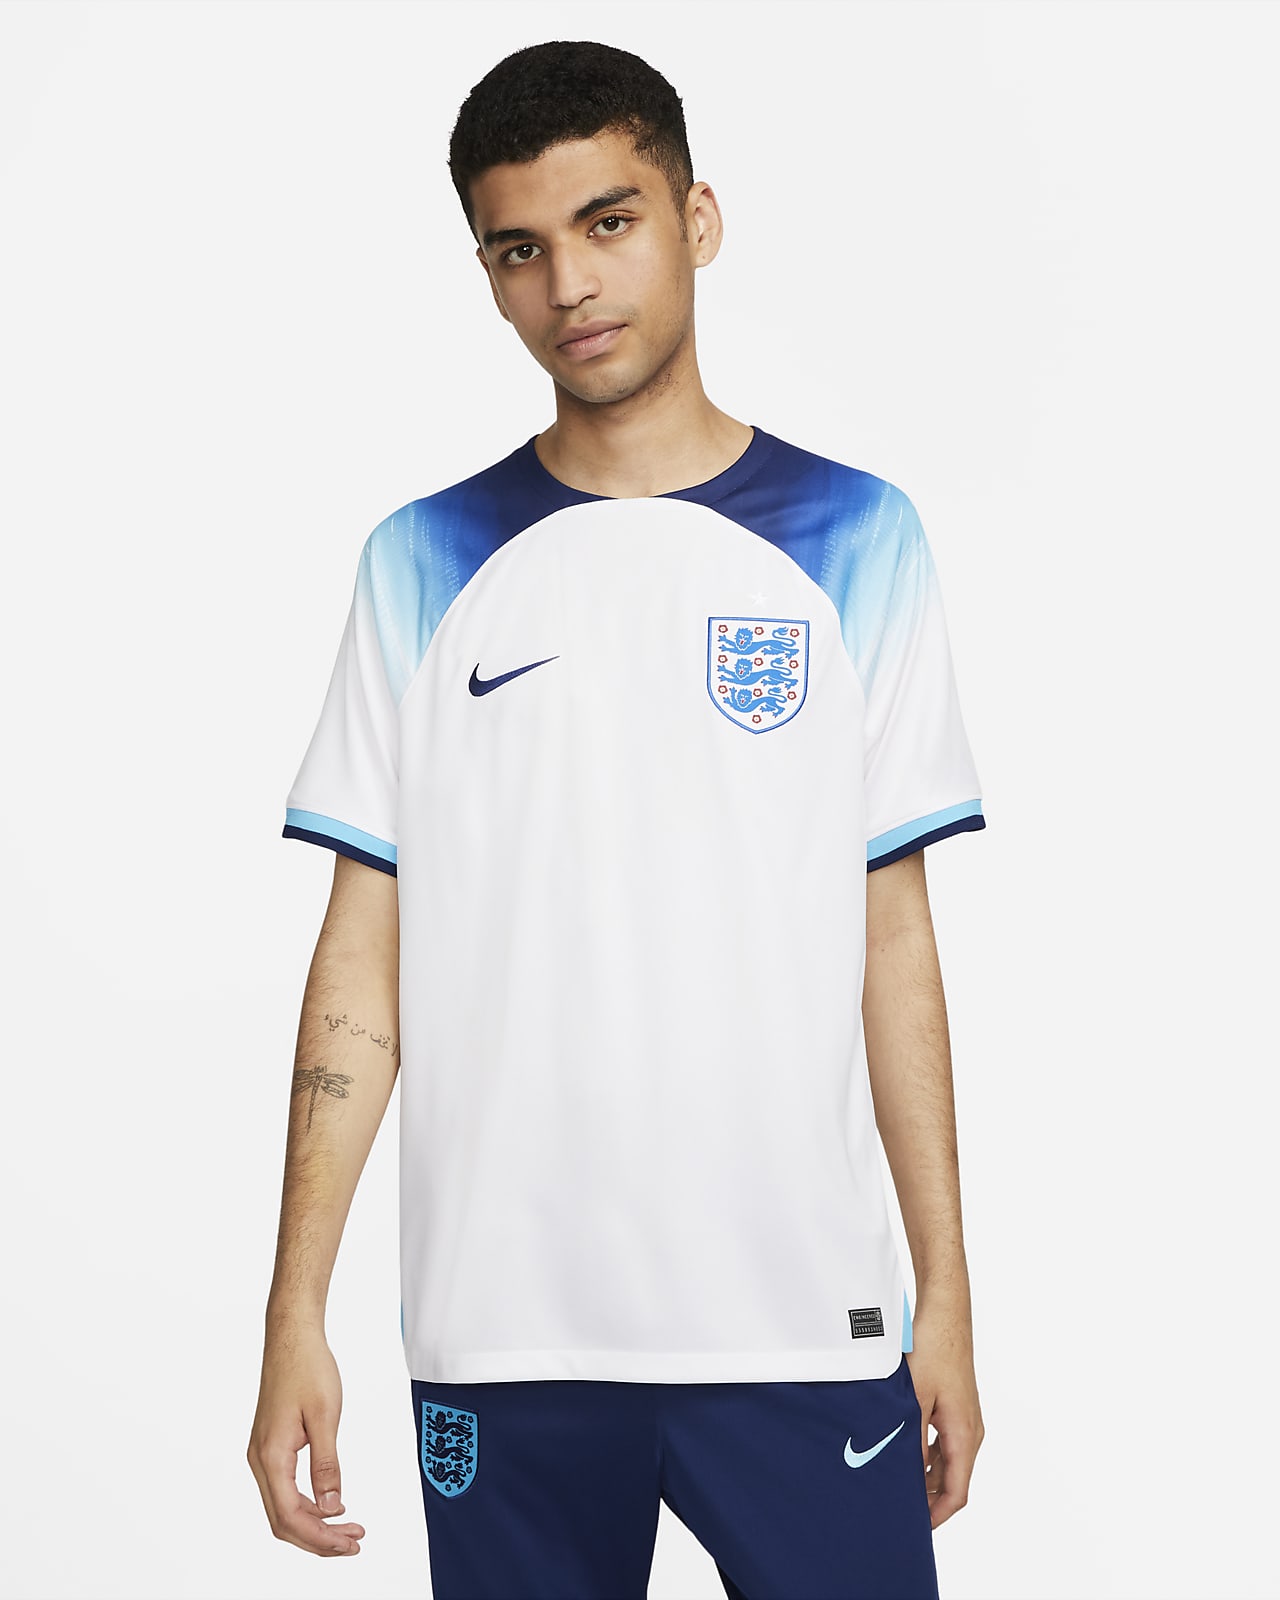 2022/23 赛季英格兰队主场球迷版 Nike Dri-FIT 男子足球球衣